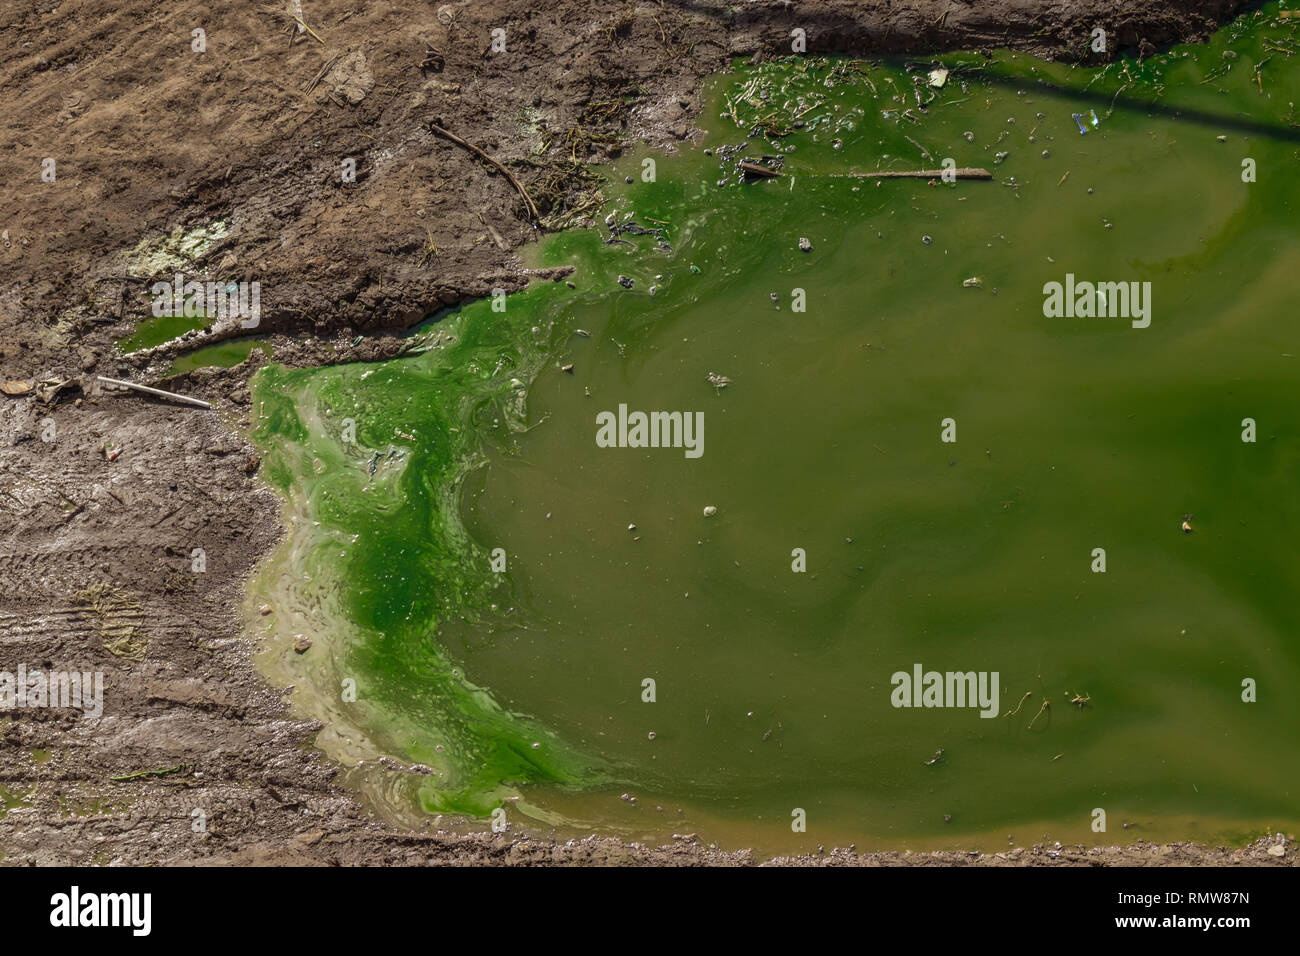 Verschmutztes Wasser. Chemische Katastrophe. grünlich schmutziges Wasser auf eine schlammige Erde. ökologische Katastrophe. Stockfoto